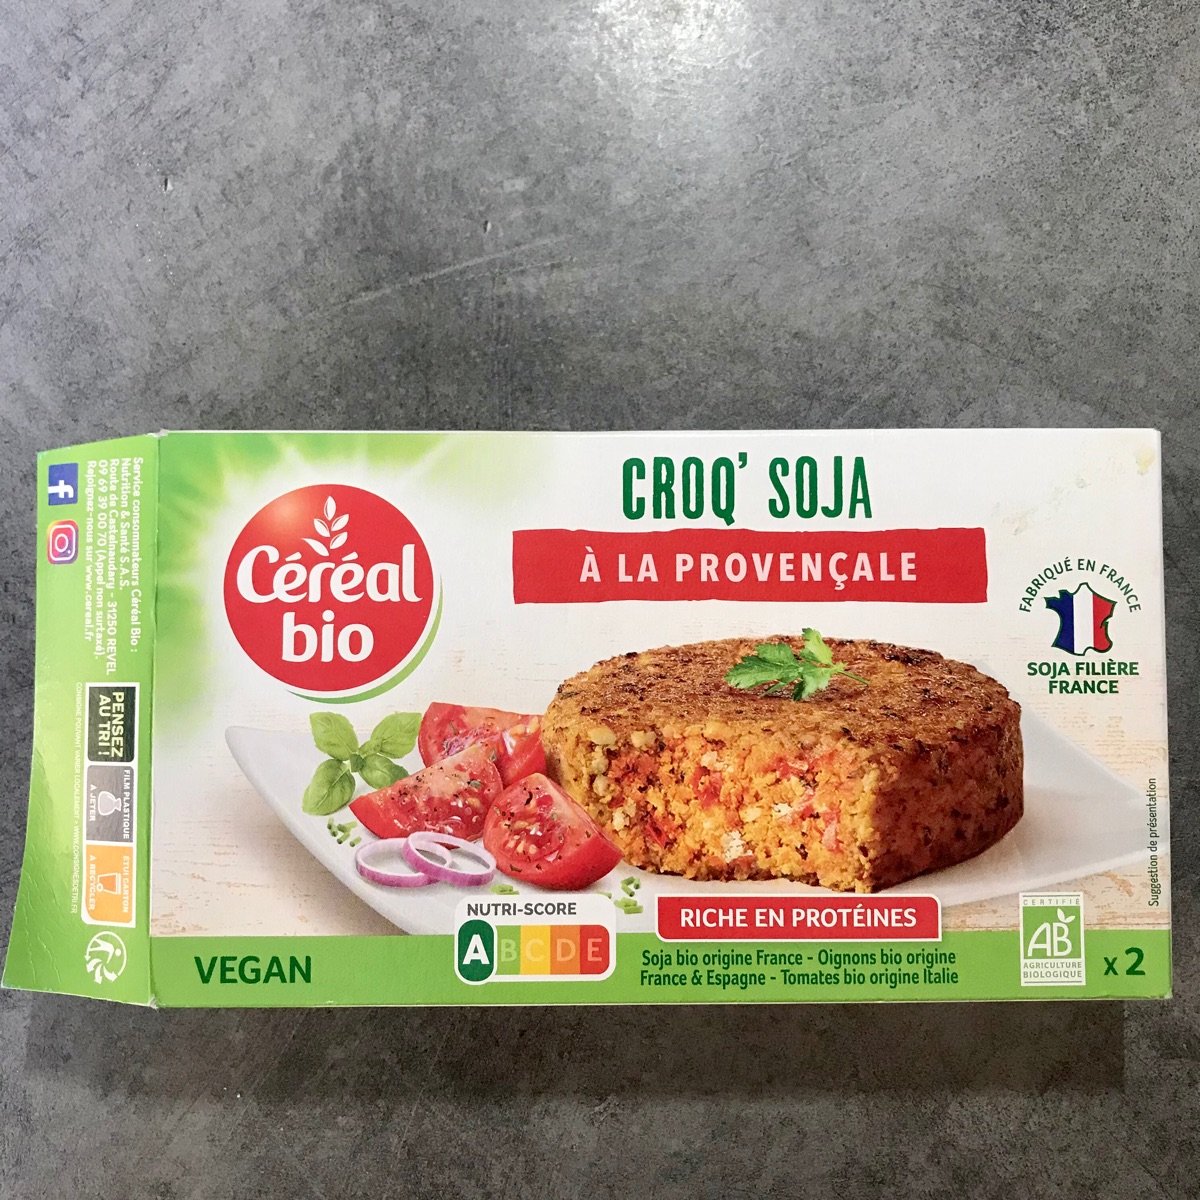 Céréal Bio Croq'soja à la Provençale Reviews